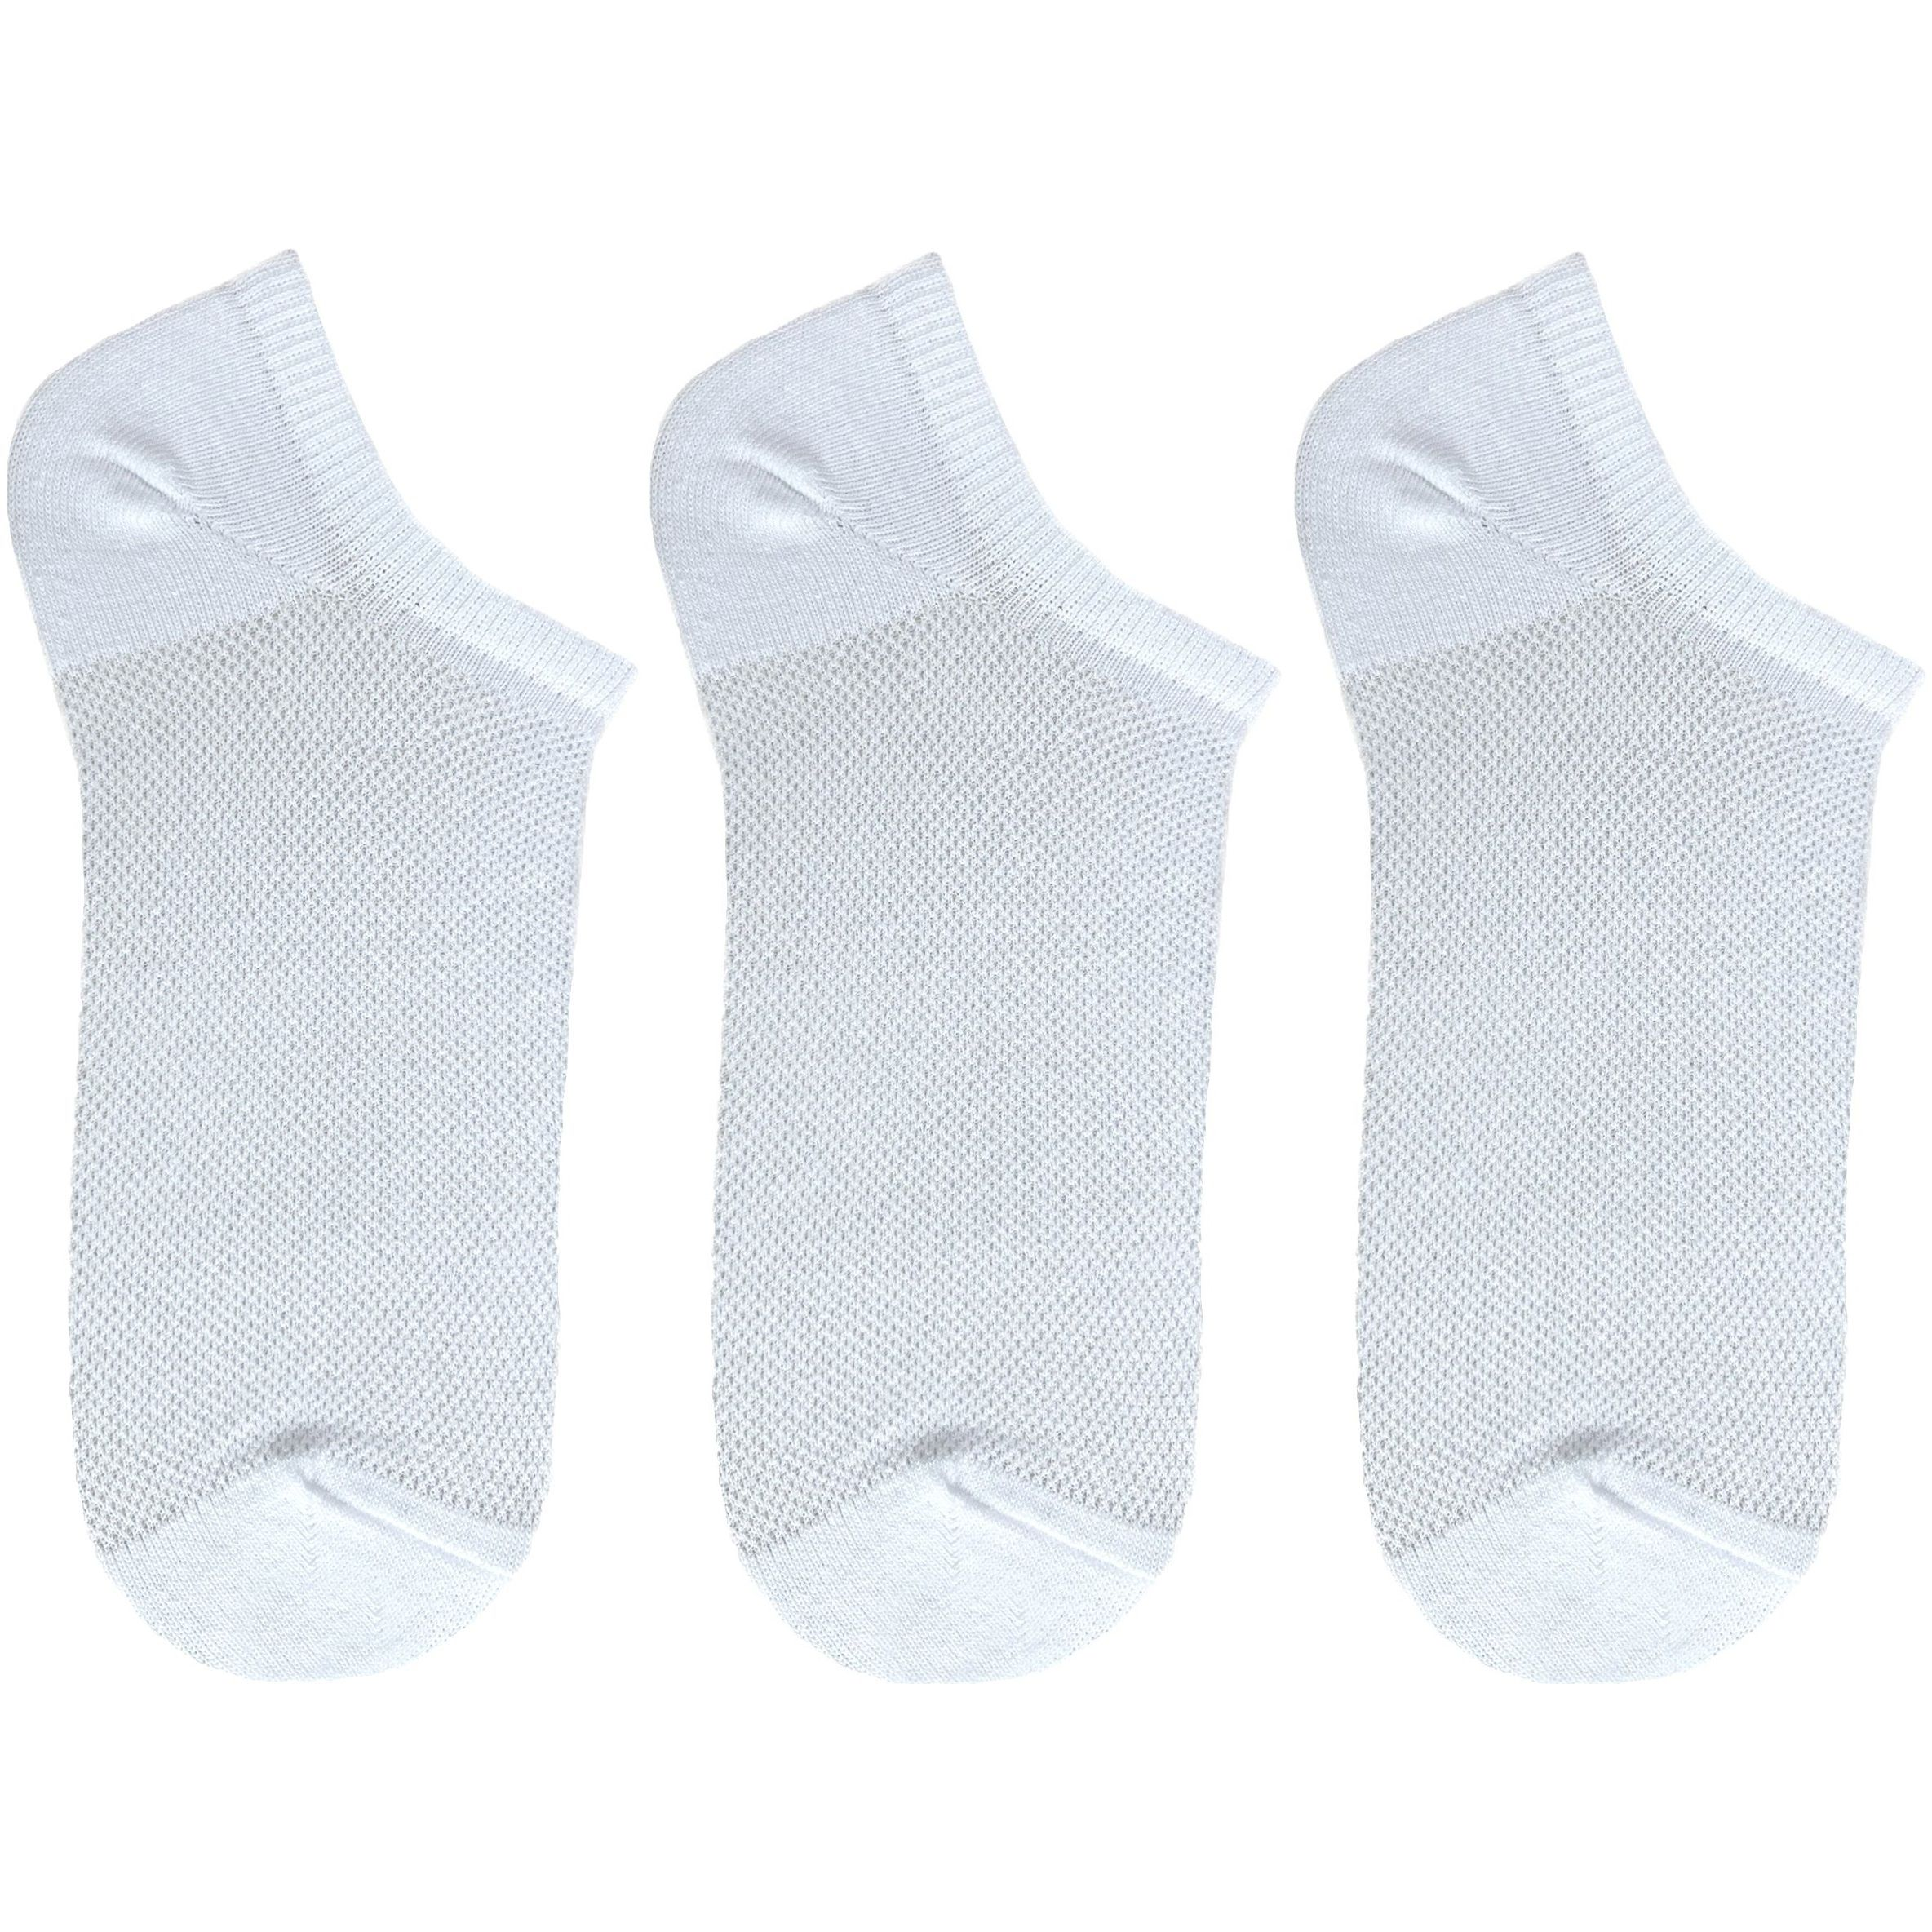 Набор носков женские Premier Socks 36-40 3 пары белые (4820163319391) фото 1